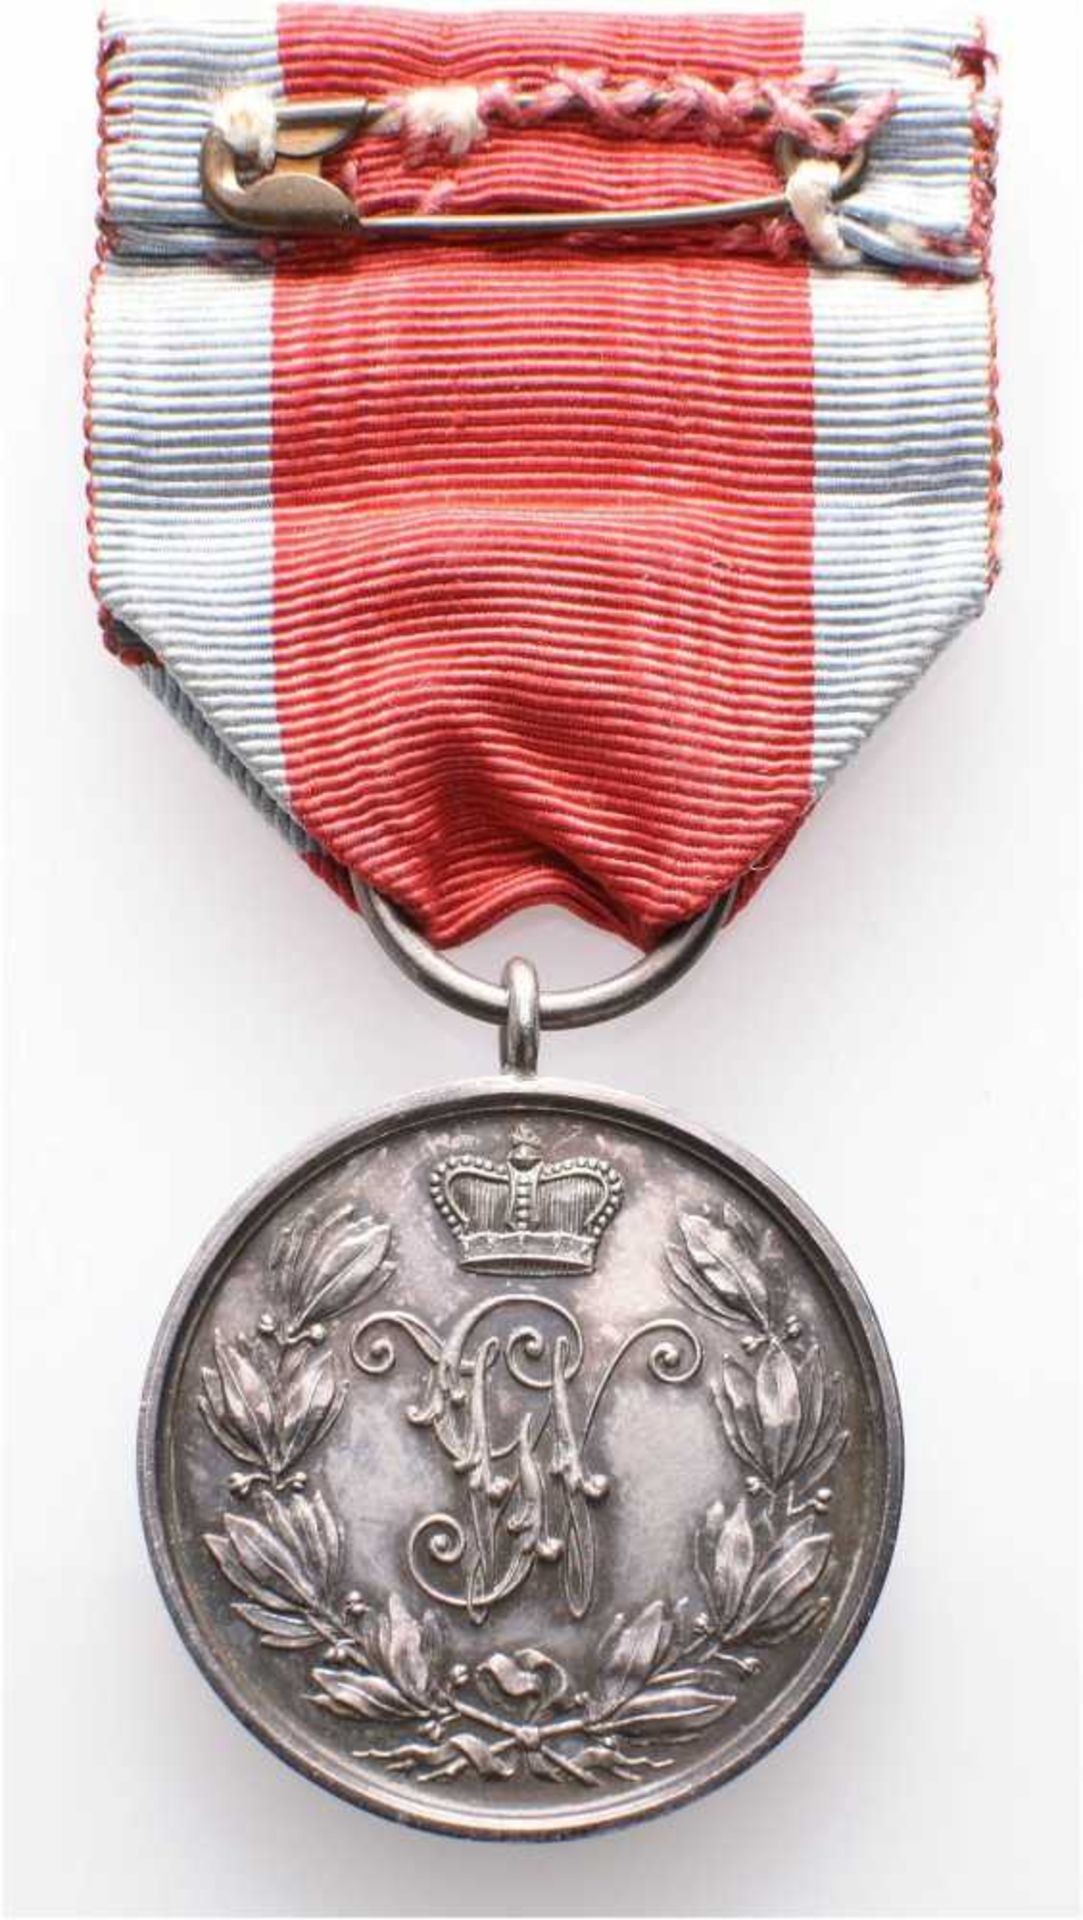 Schaumburg-Lippe, Silberne Militärverdienstmedaille mit emailliertem Genfer Kreuz auf dem Band, Silb - Bild 2 aus 2